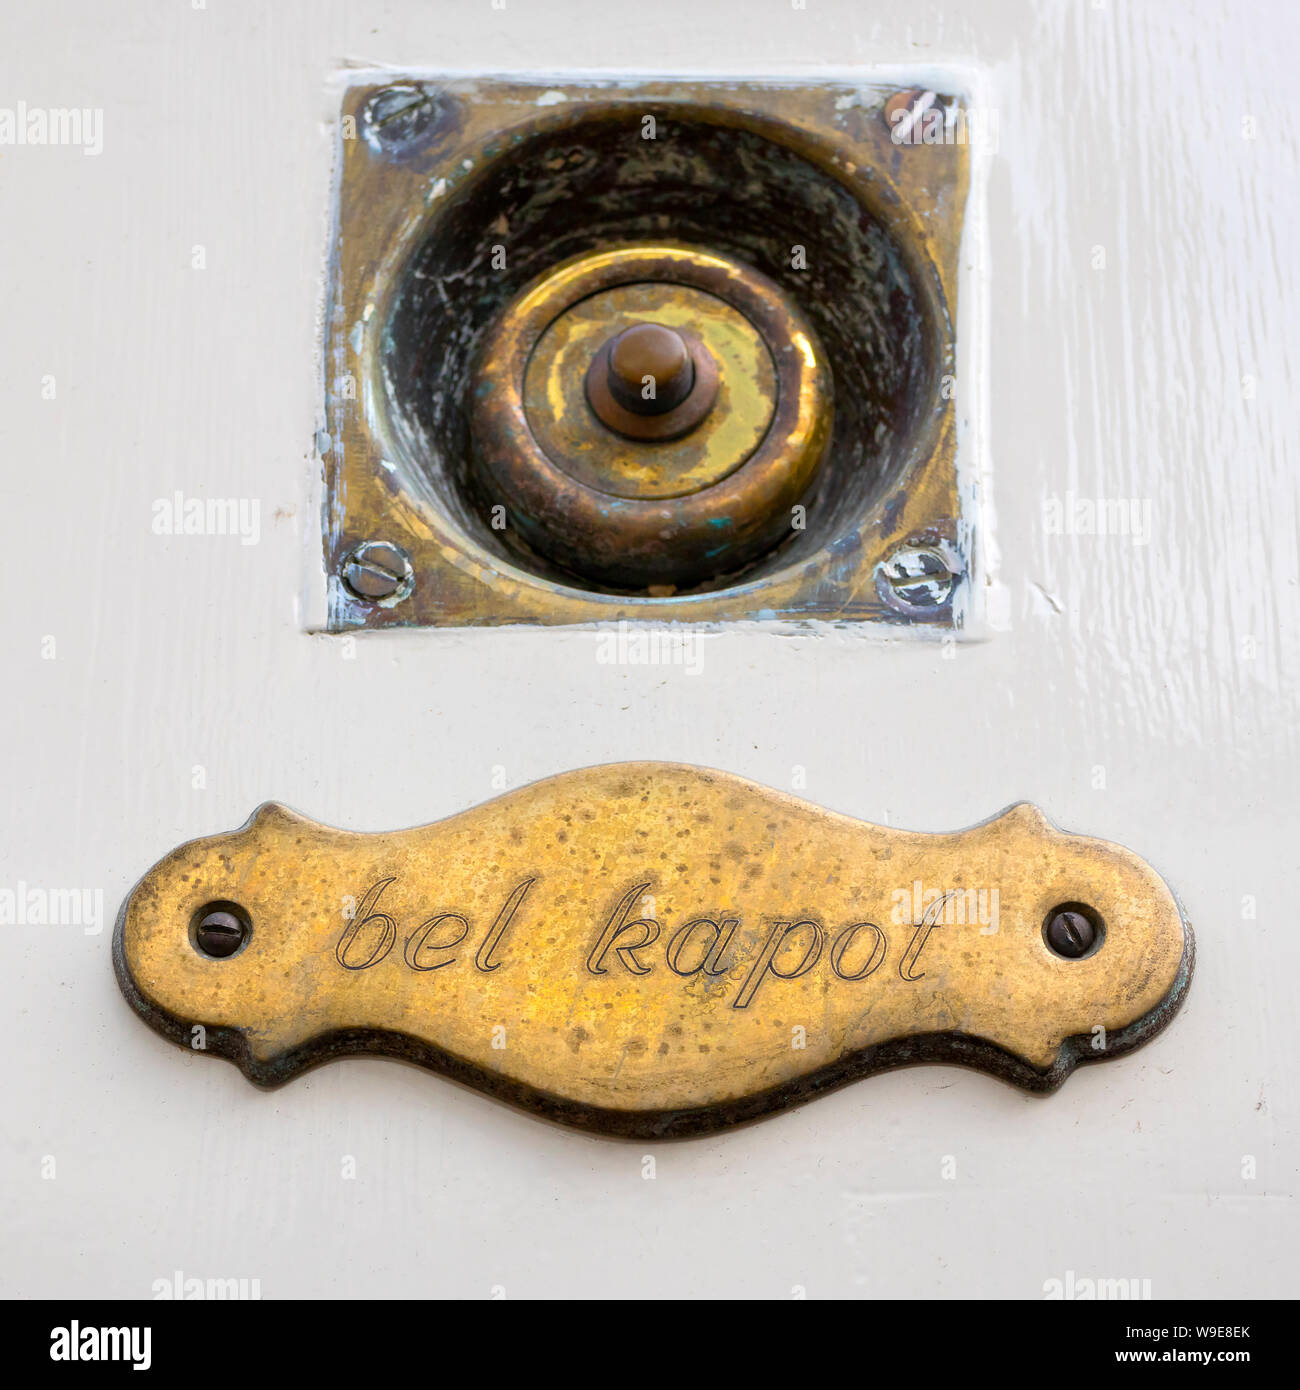 Leiden, Hollande - Juillet 05, 2019 : vieux cuivre traditionnelles avec le signe de sonnette bell ne fonctionne pas Banque D'Images